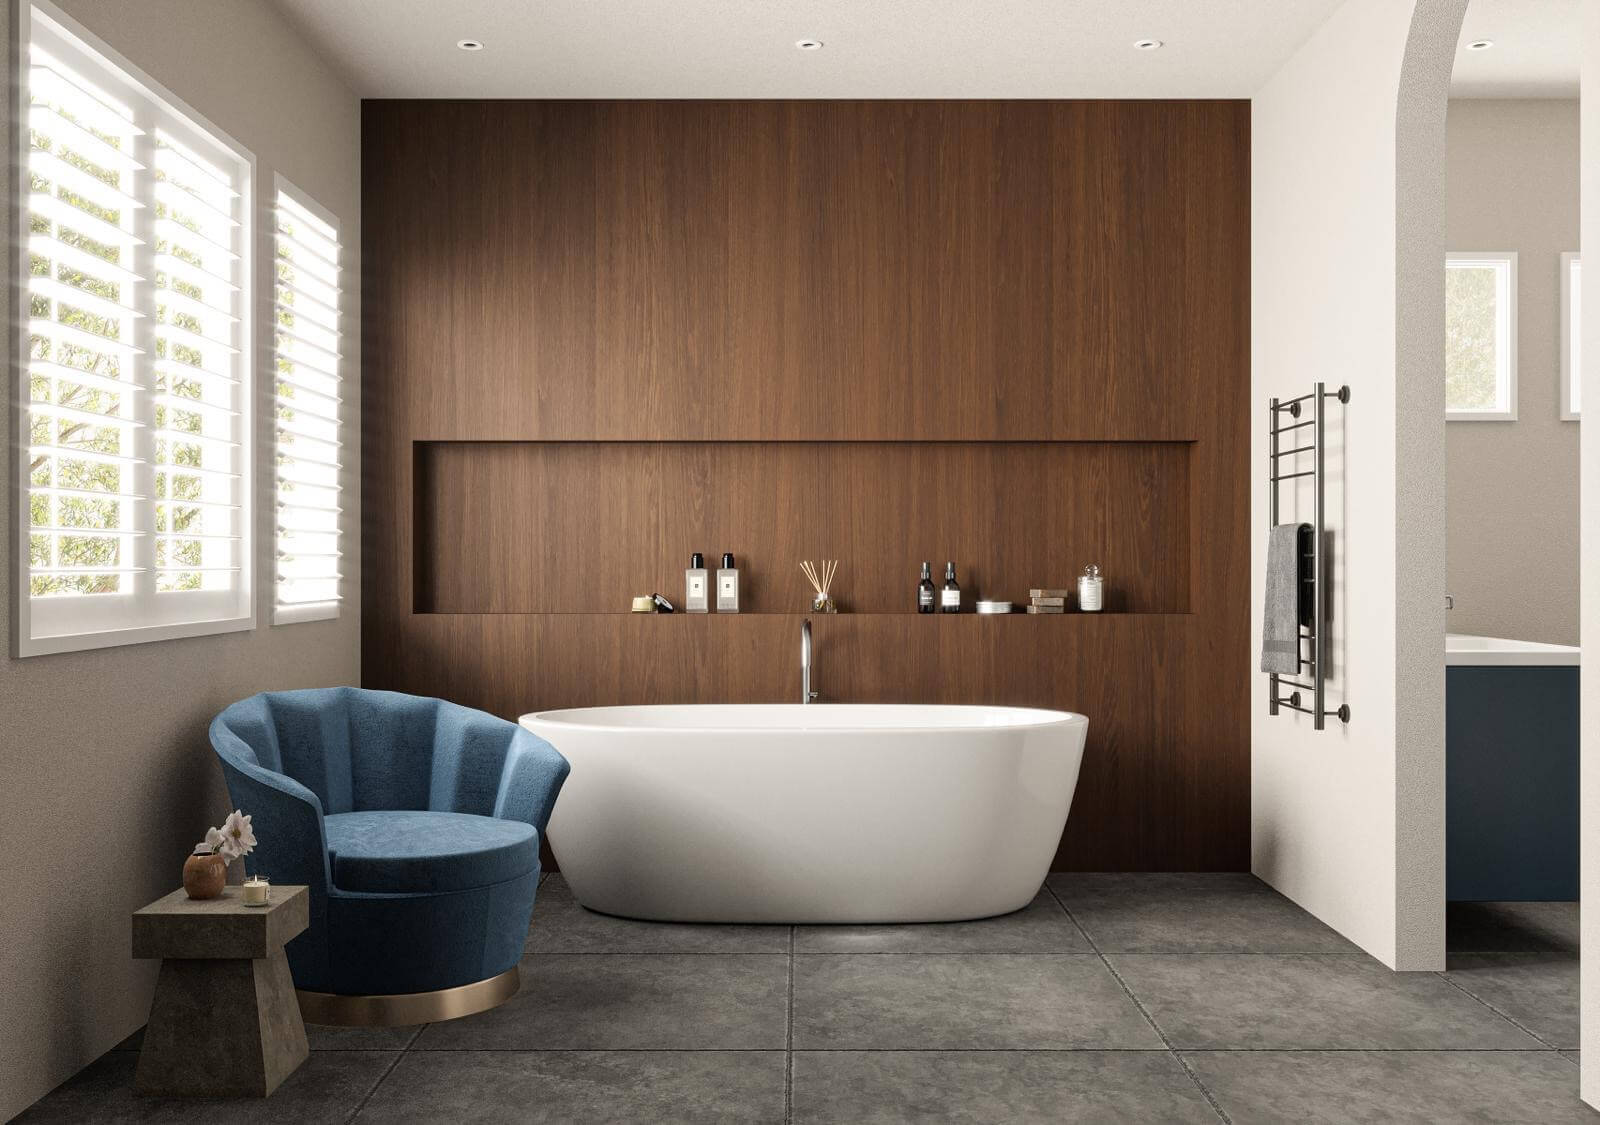 Dobd fel a fürdőszobád: mutatjuk a legfrissebb dizájn trendeket